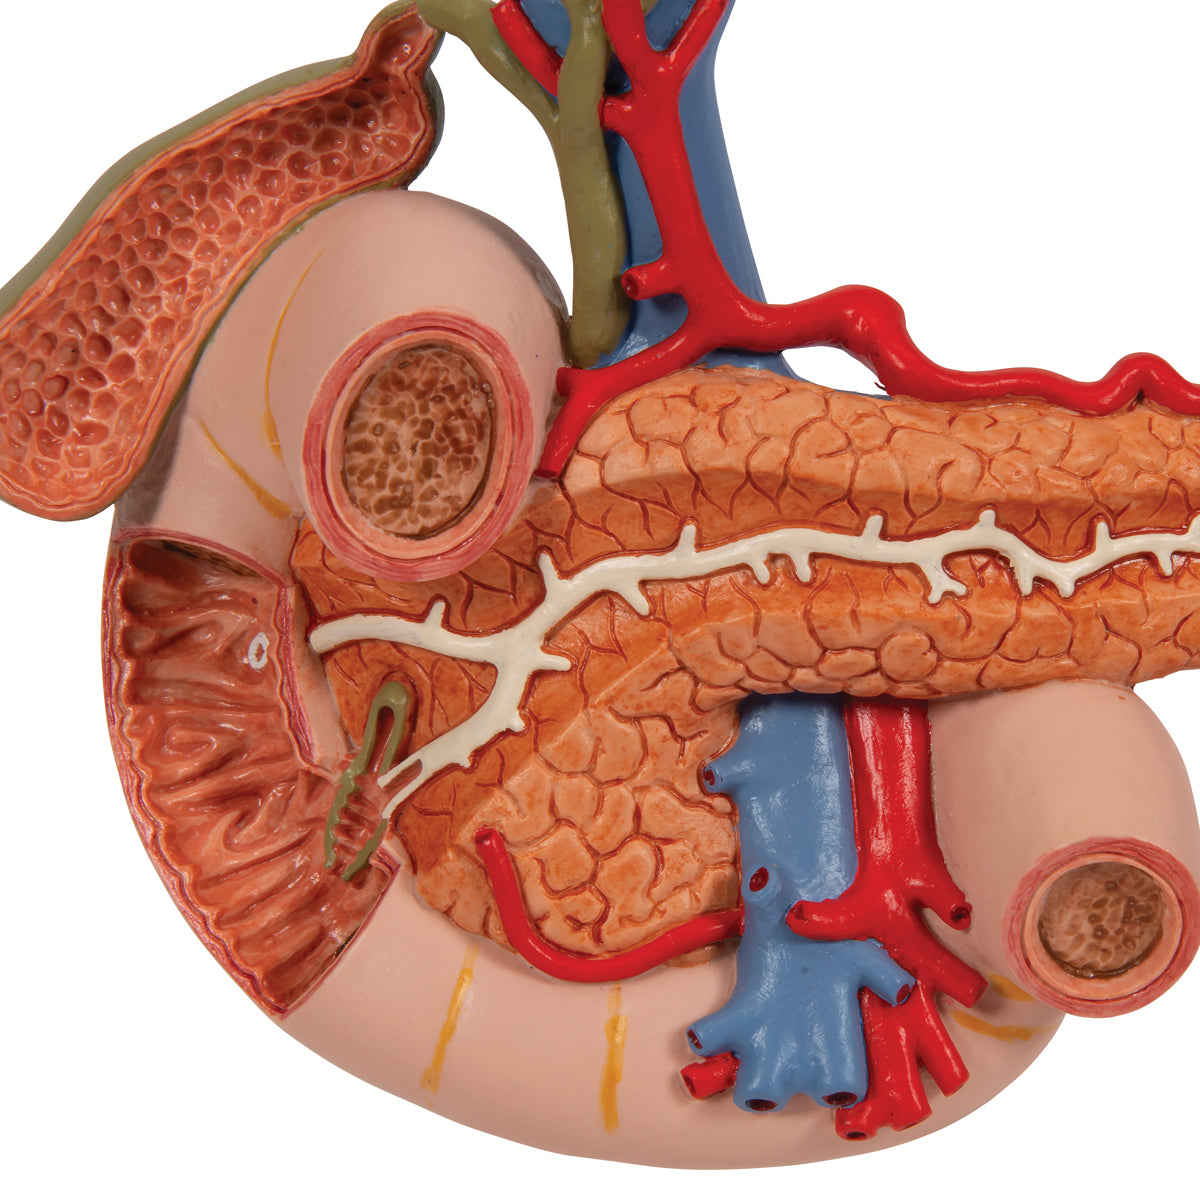 Model af tolvfingertarmen og bugspytkirtlens relationer til andre organer